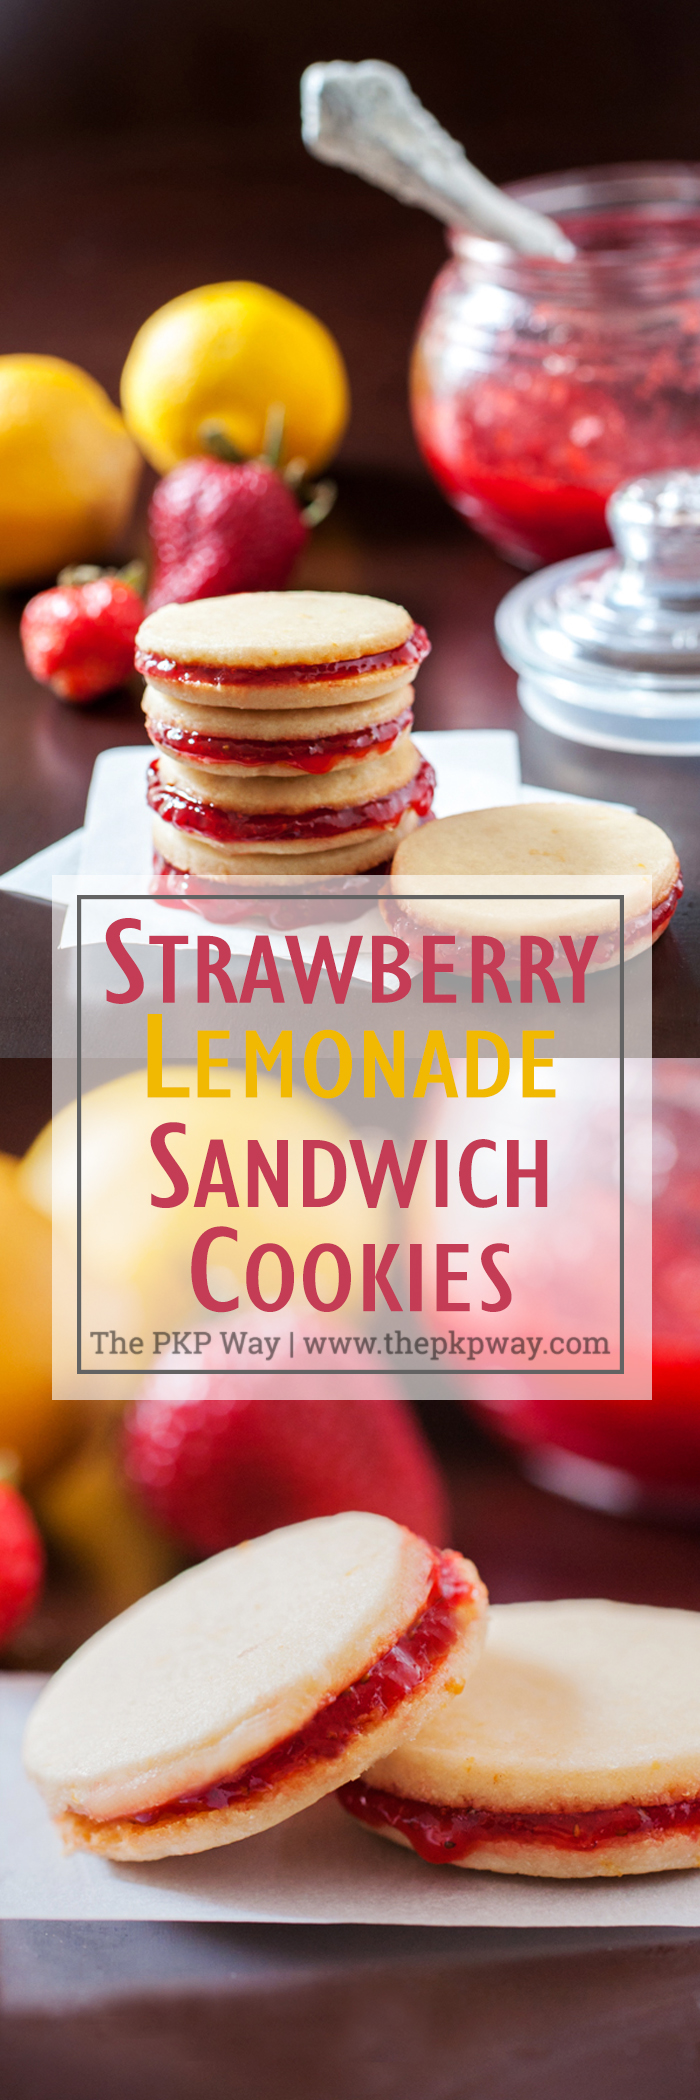 Strawberry Lemonade Sandwich Cookies. Easy homemade strawberry jam sandwiched between lemon shortbread cookies. 